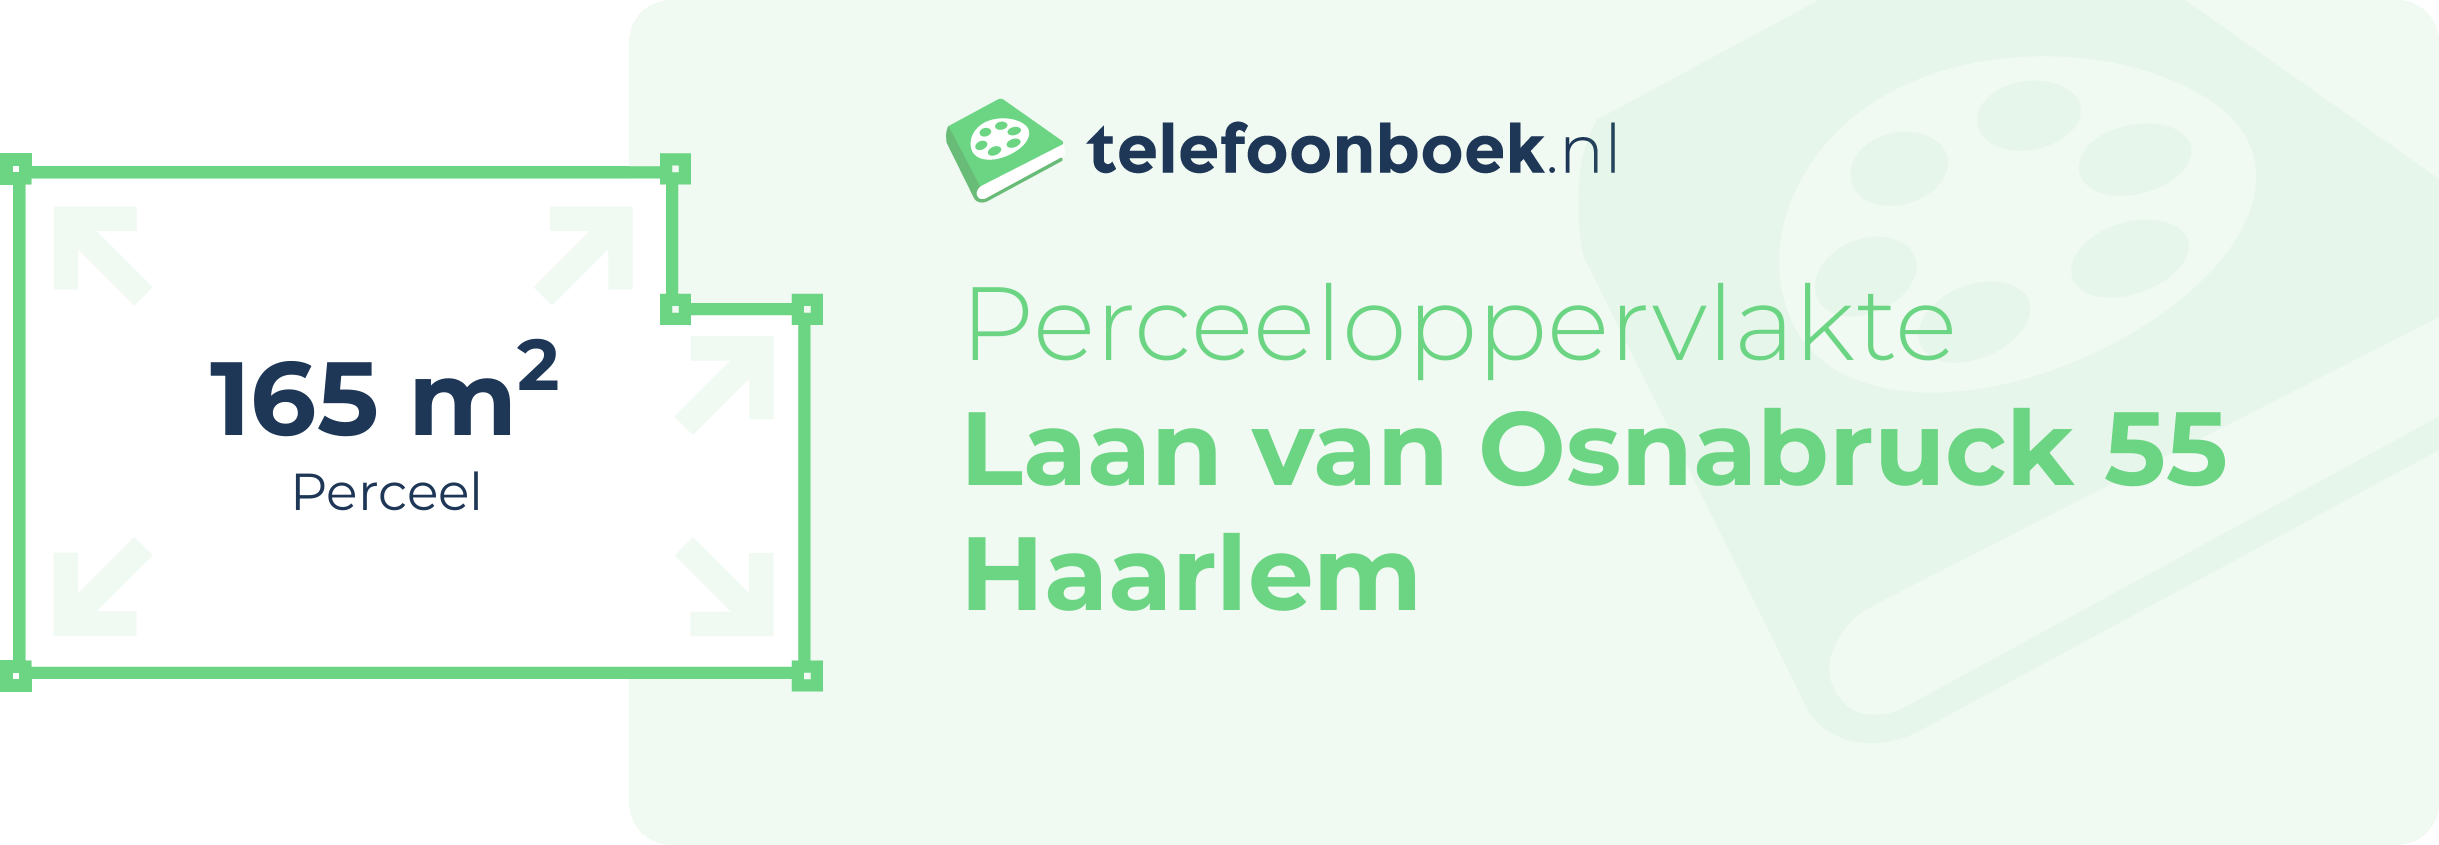 Perceeloppervlakte Laan Van Osnabruck 55 Haarlem